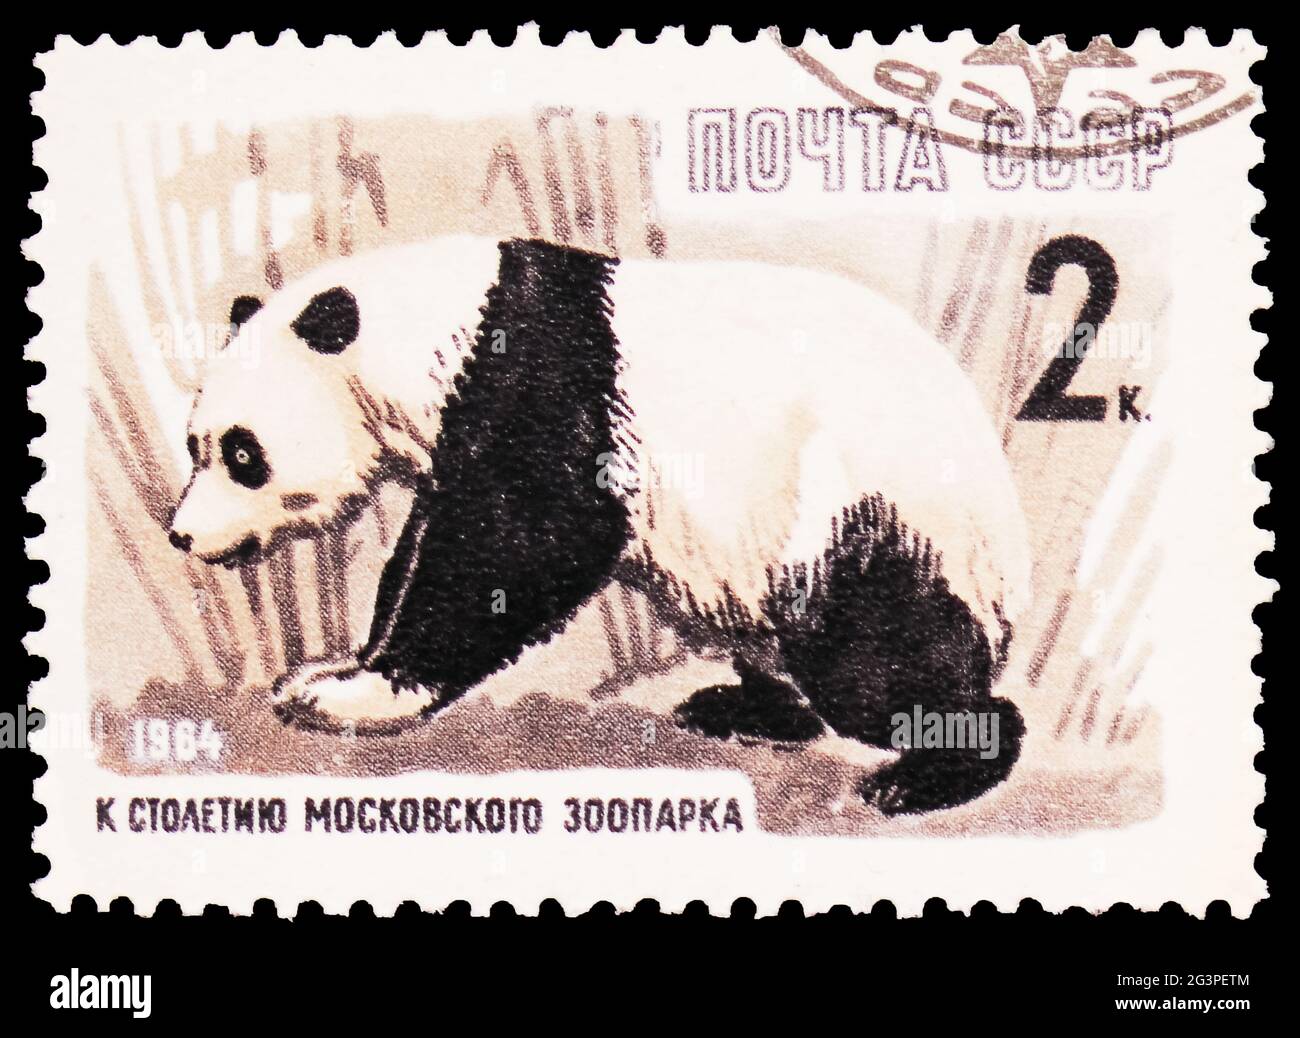 MOSKAU, RUSSLAND - 22. MÄRZ 2020: Die in der Sowjetunion gedruckte Briefmarke zeigt den Großen Panda (Ailuropoda melanoleuca), die Jahrhundertserie des Moskauer Zoos, um 1 Stockfoto